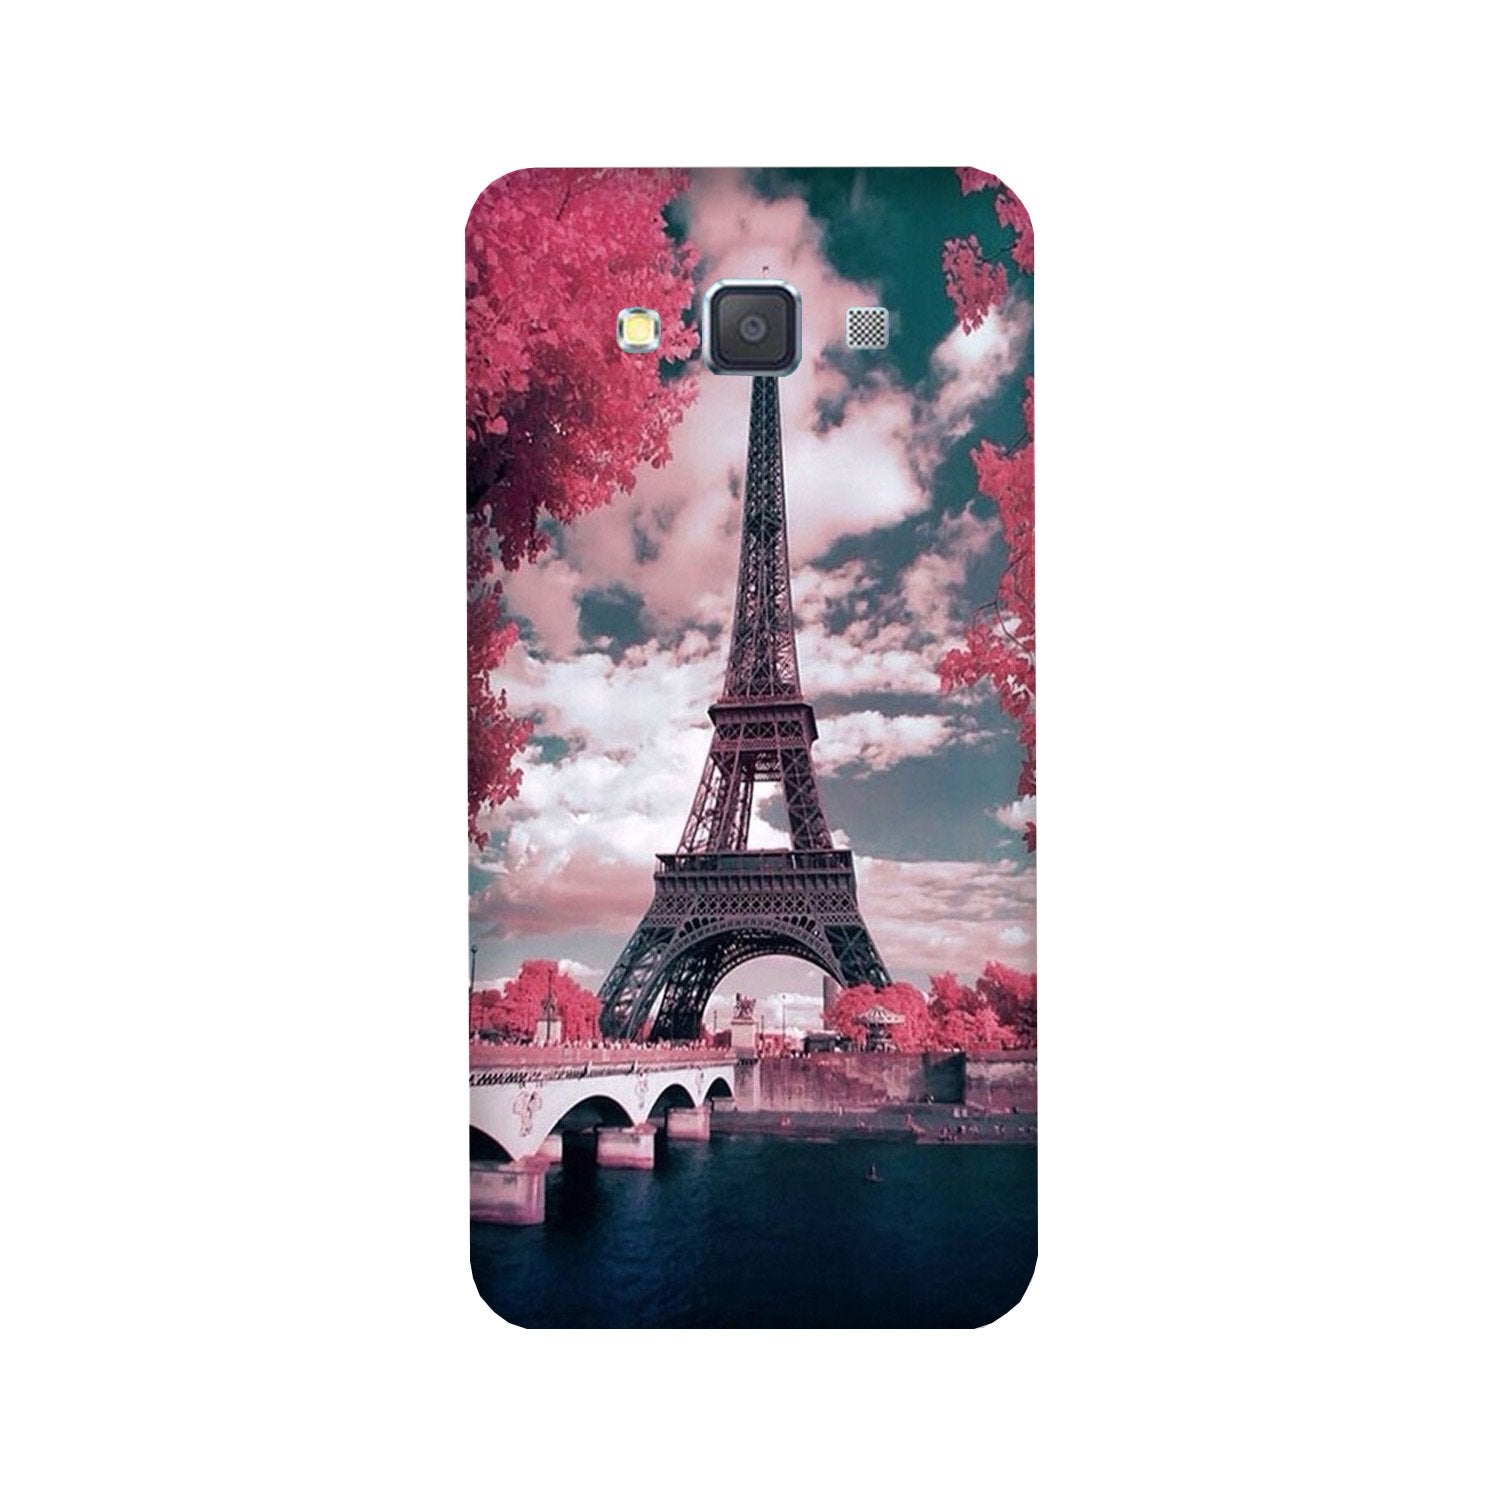 Eiffel Tower Case for Galaxy A5 (2015)(Design - 101)